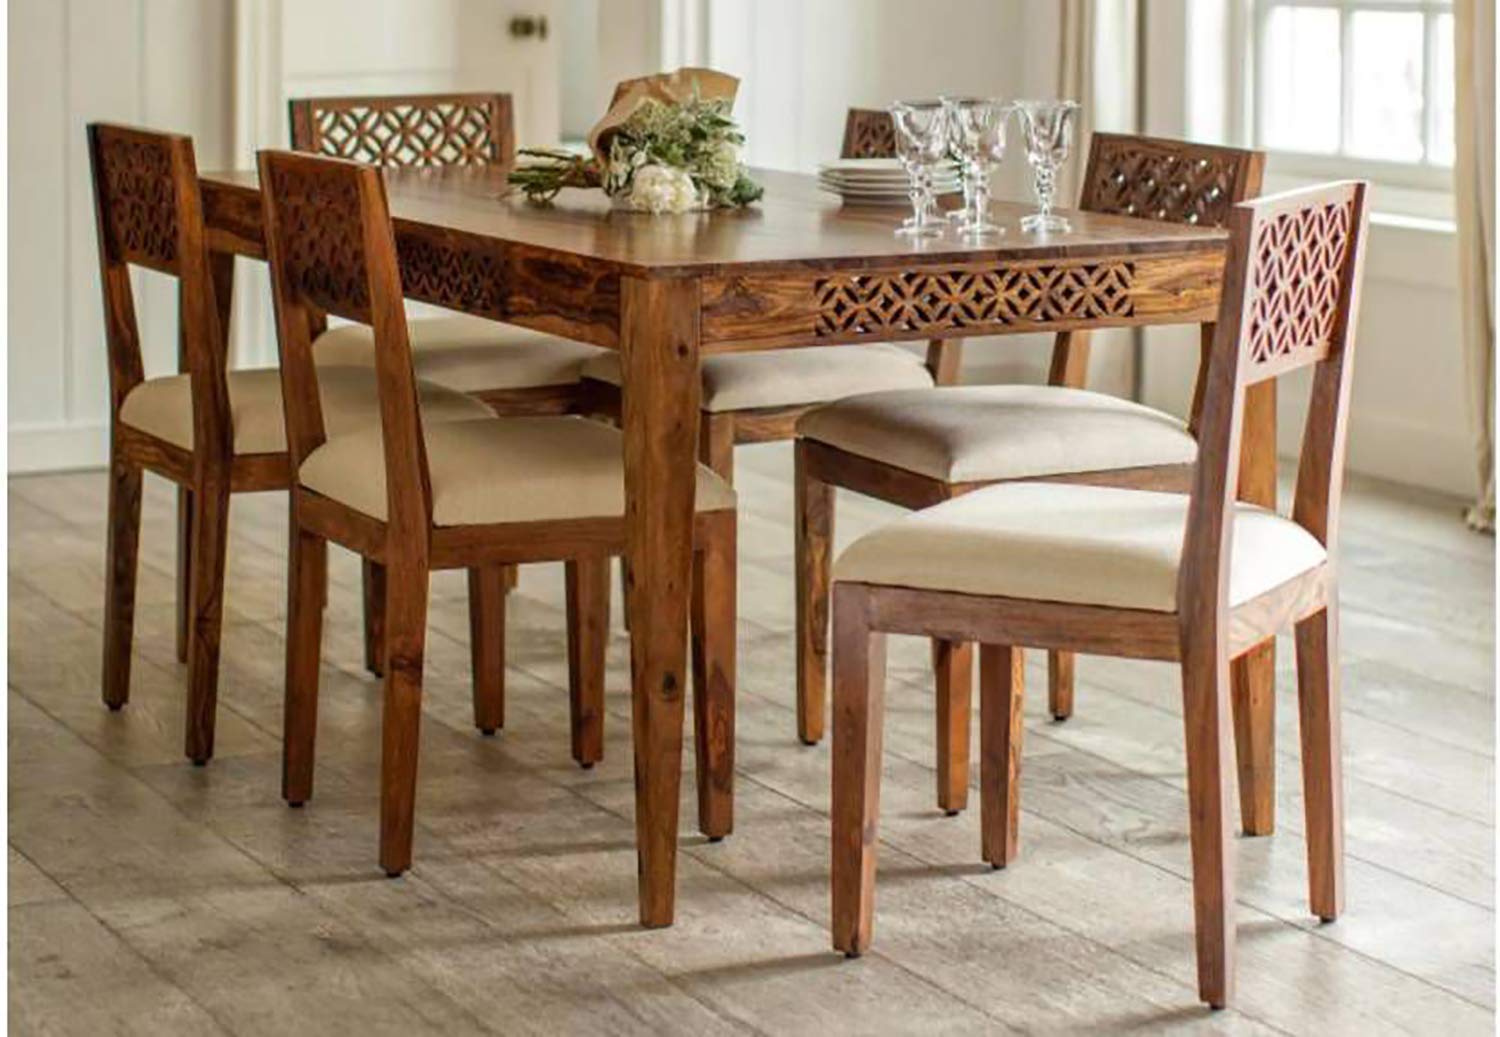 Amazon Deal: सिर्फ 15 हजार में मिल रही हैं ब्रांडेड Dining Table, देखिये बेस्ट 4 सीटर डाइनिंग टेबल की डील